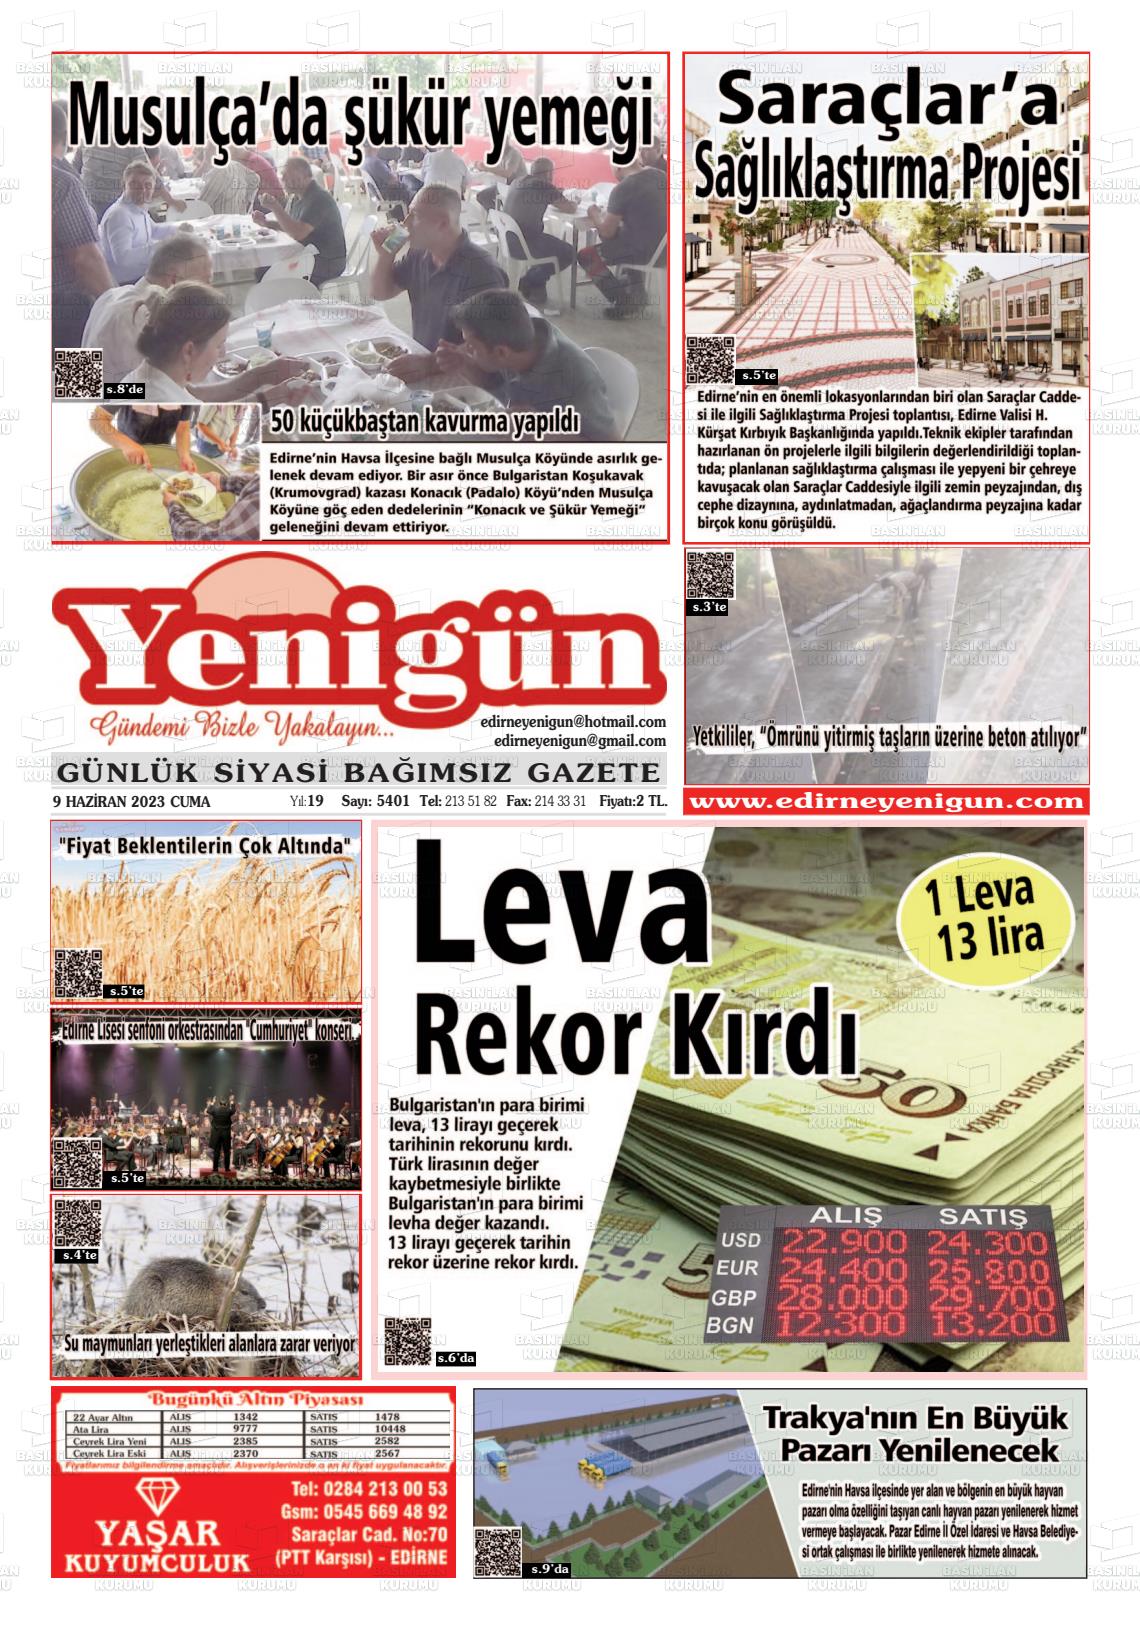 09 Haziran 2023 Edirne Yenigün Gazete Manşeti